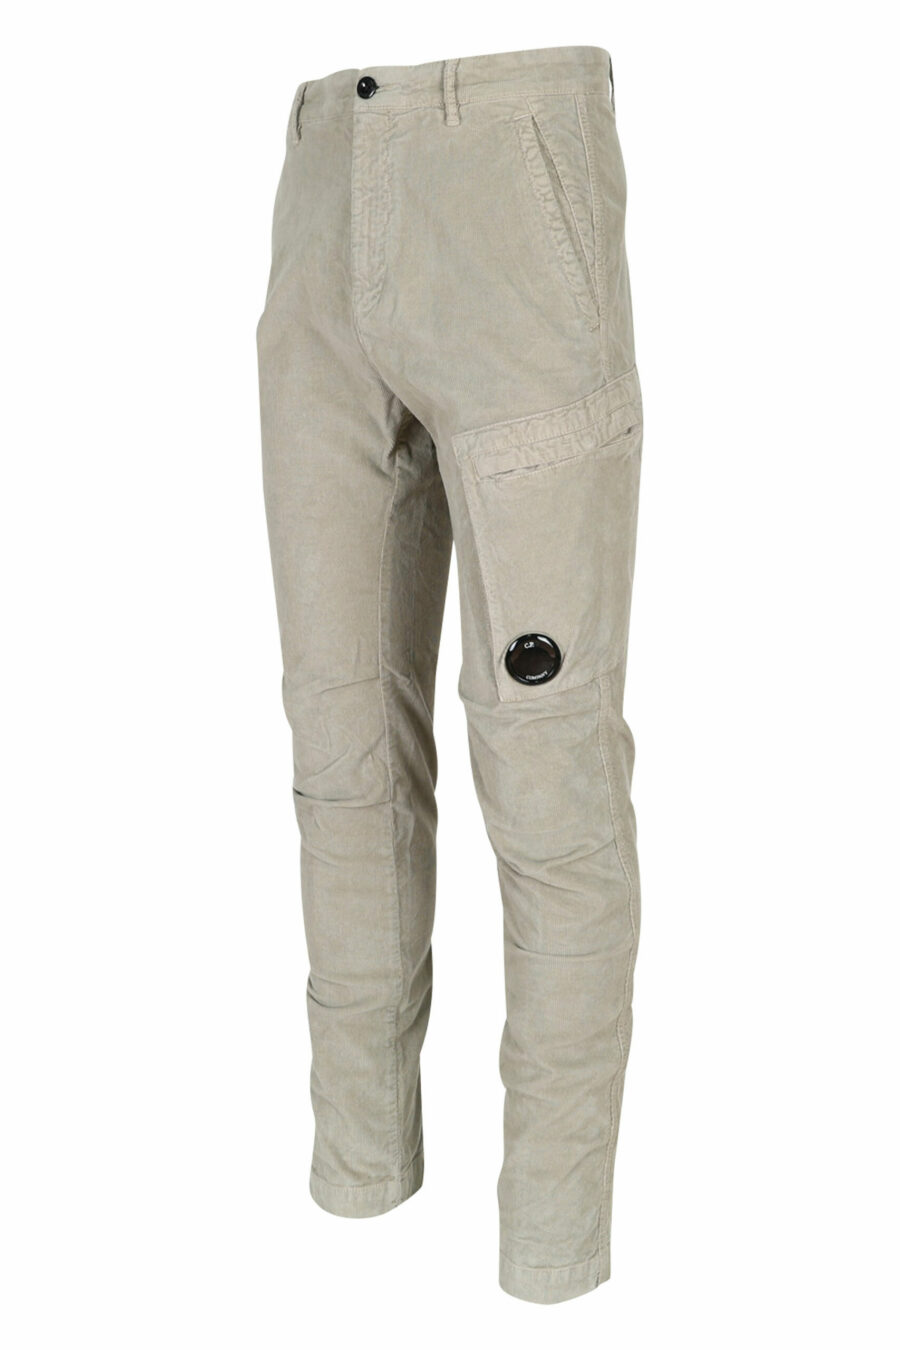 Pantalón de pana beige con bolsillo lateral y logo lente - 7620943650518 2 scaled